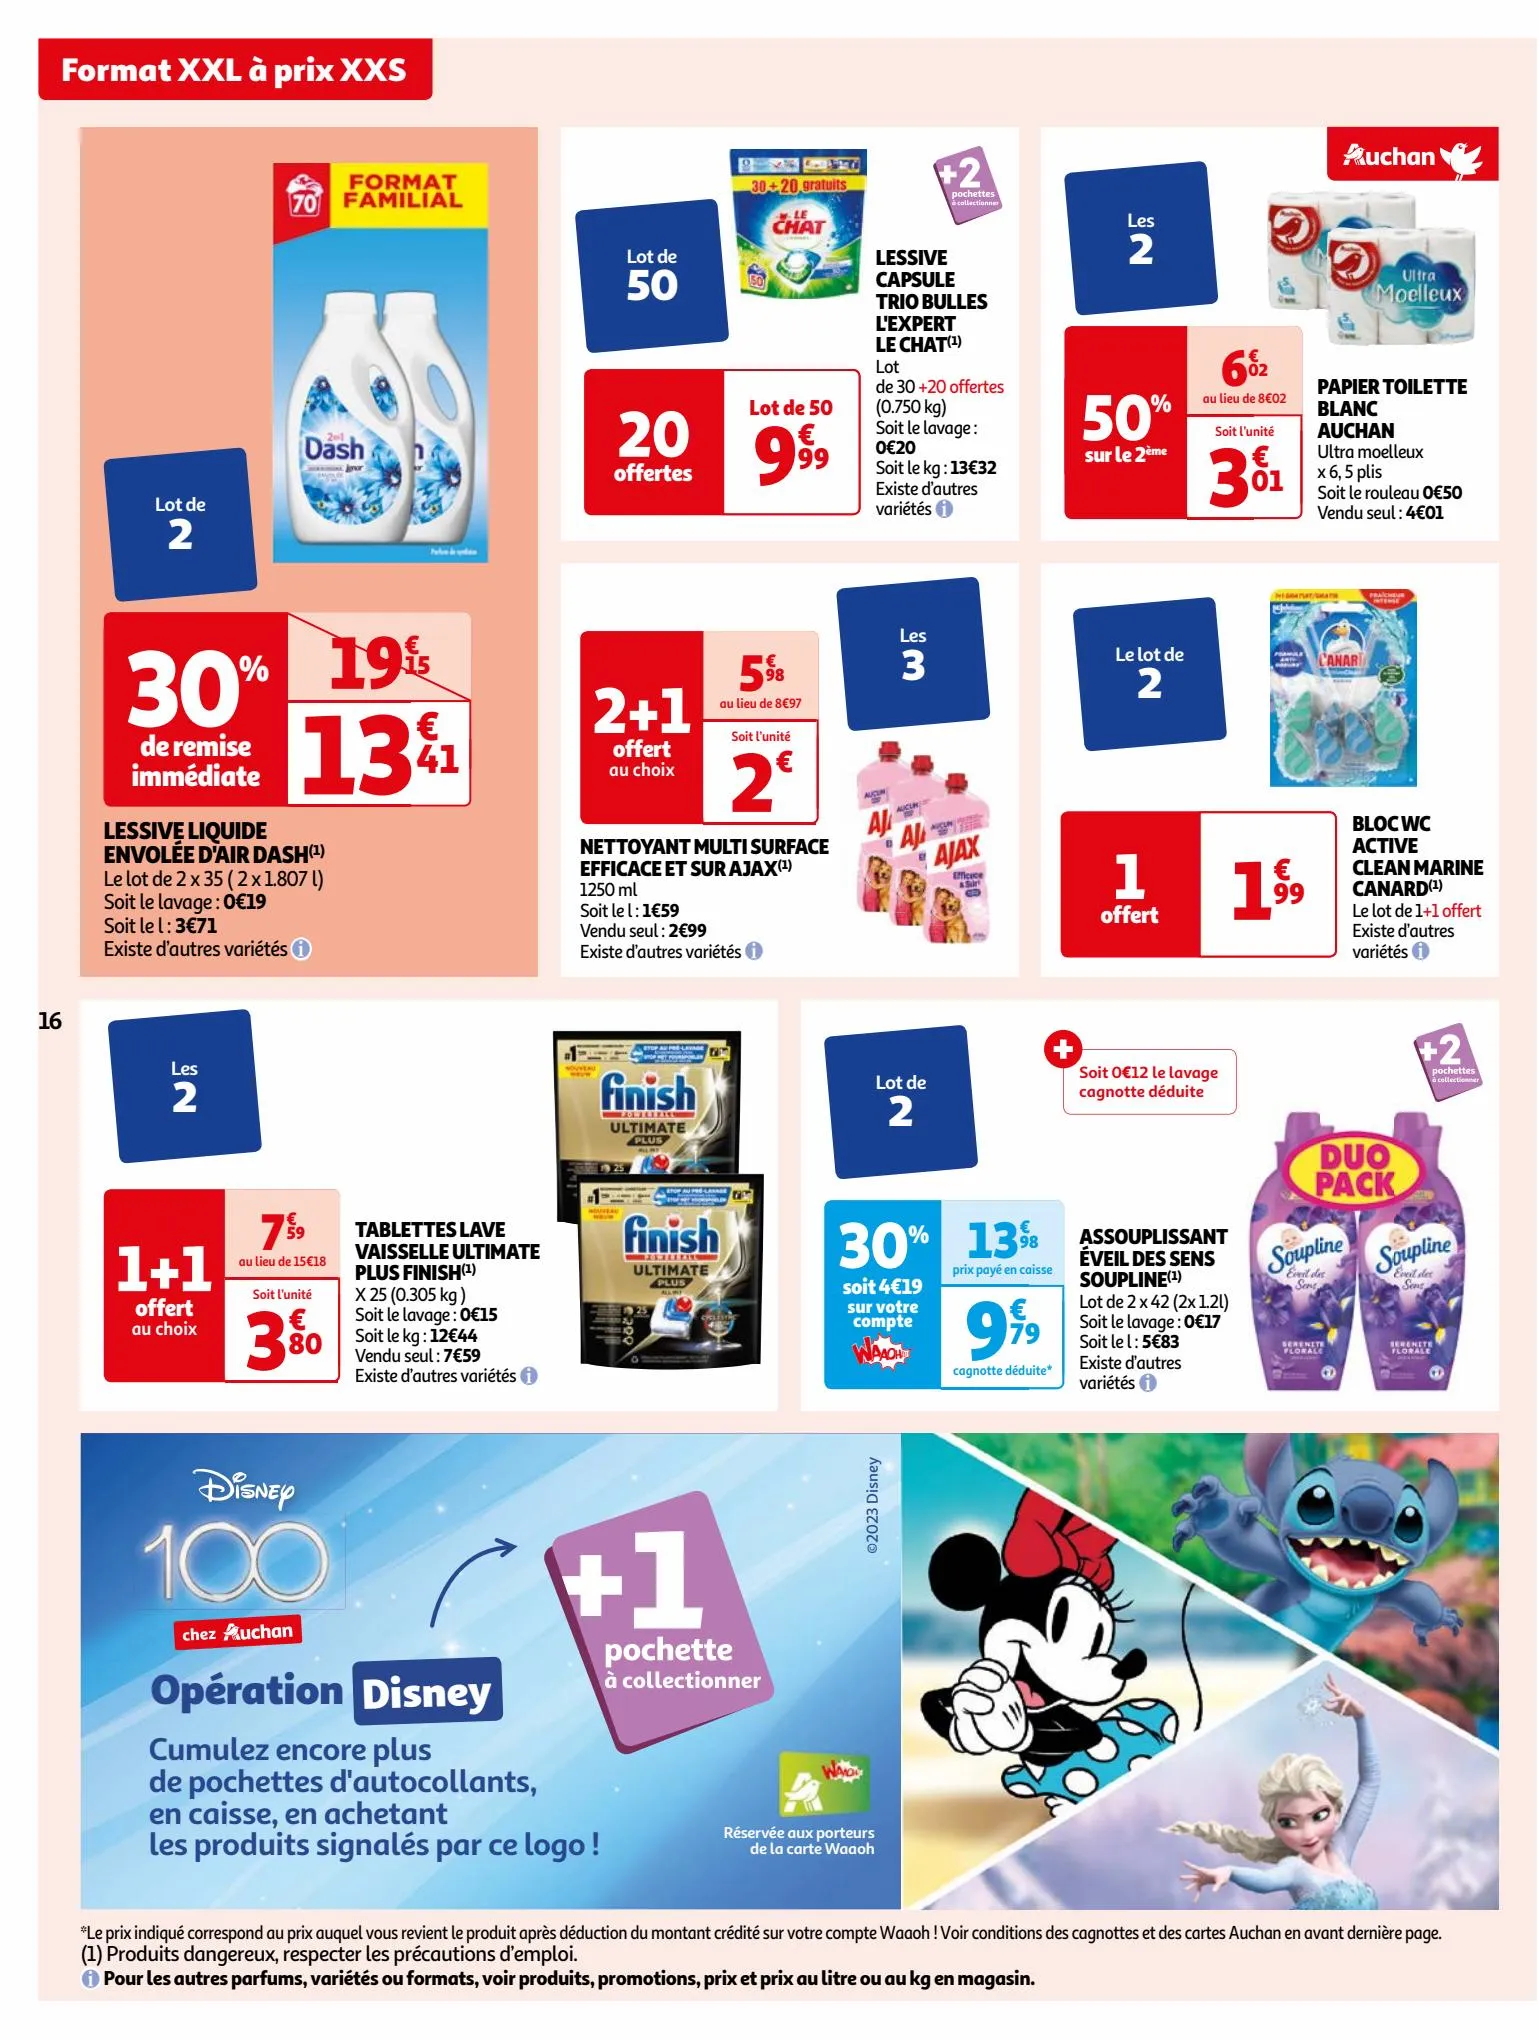 Catalogue Format XXL à prix XXS dans votre supermarché, page 00016